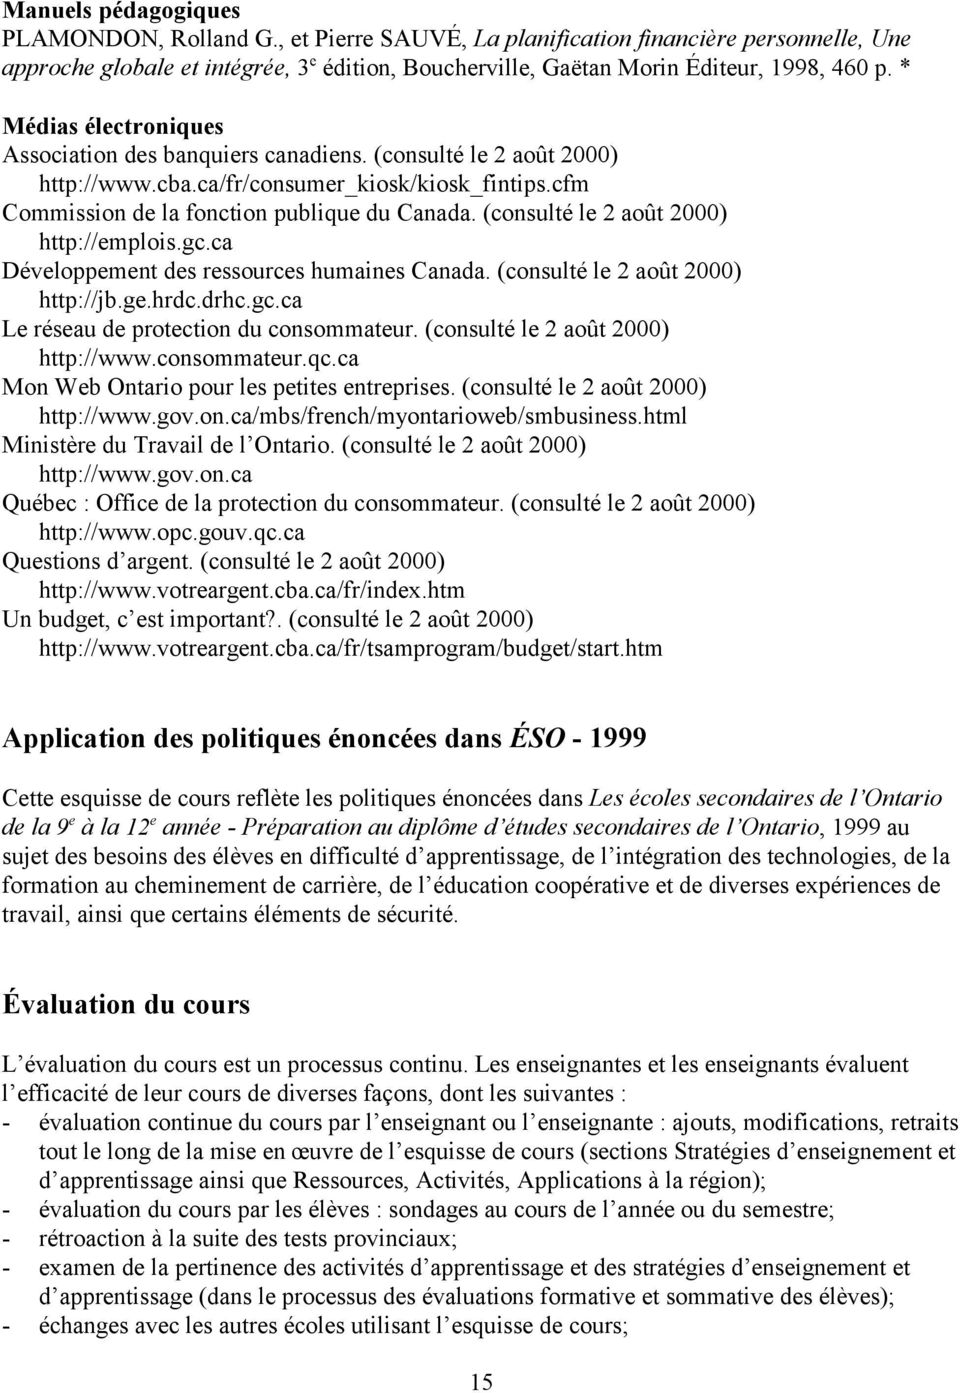 (consulté le 2 août 2000) http://emplois.gc.ca Développement des ressources humaines Canada. (consulté le 2 août 2000) http://jb.ge.hrdc.drhc.gc.ca Le réseau de protection du consommateur.